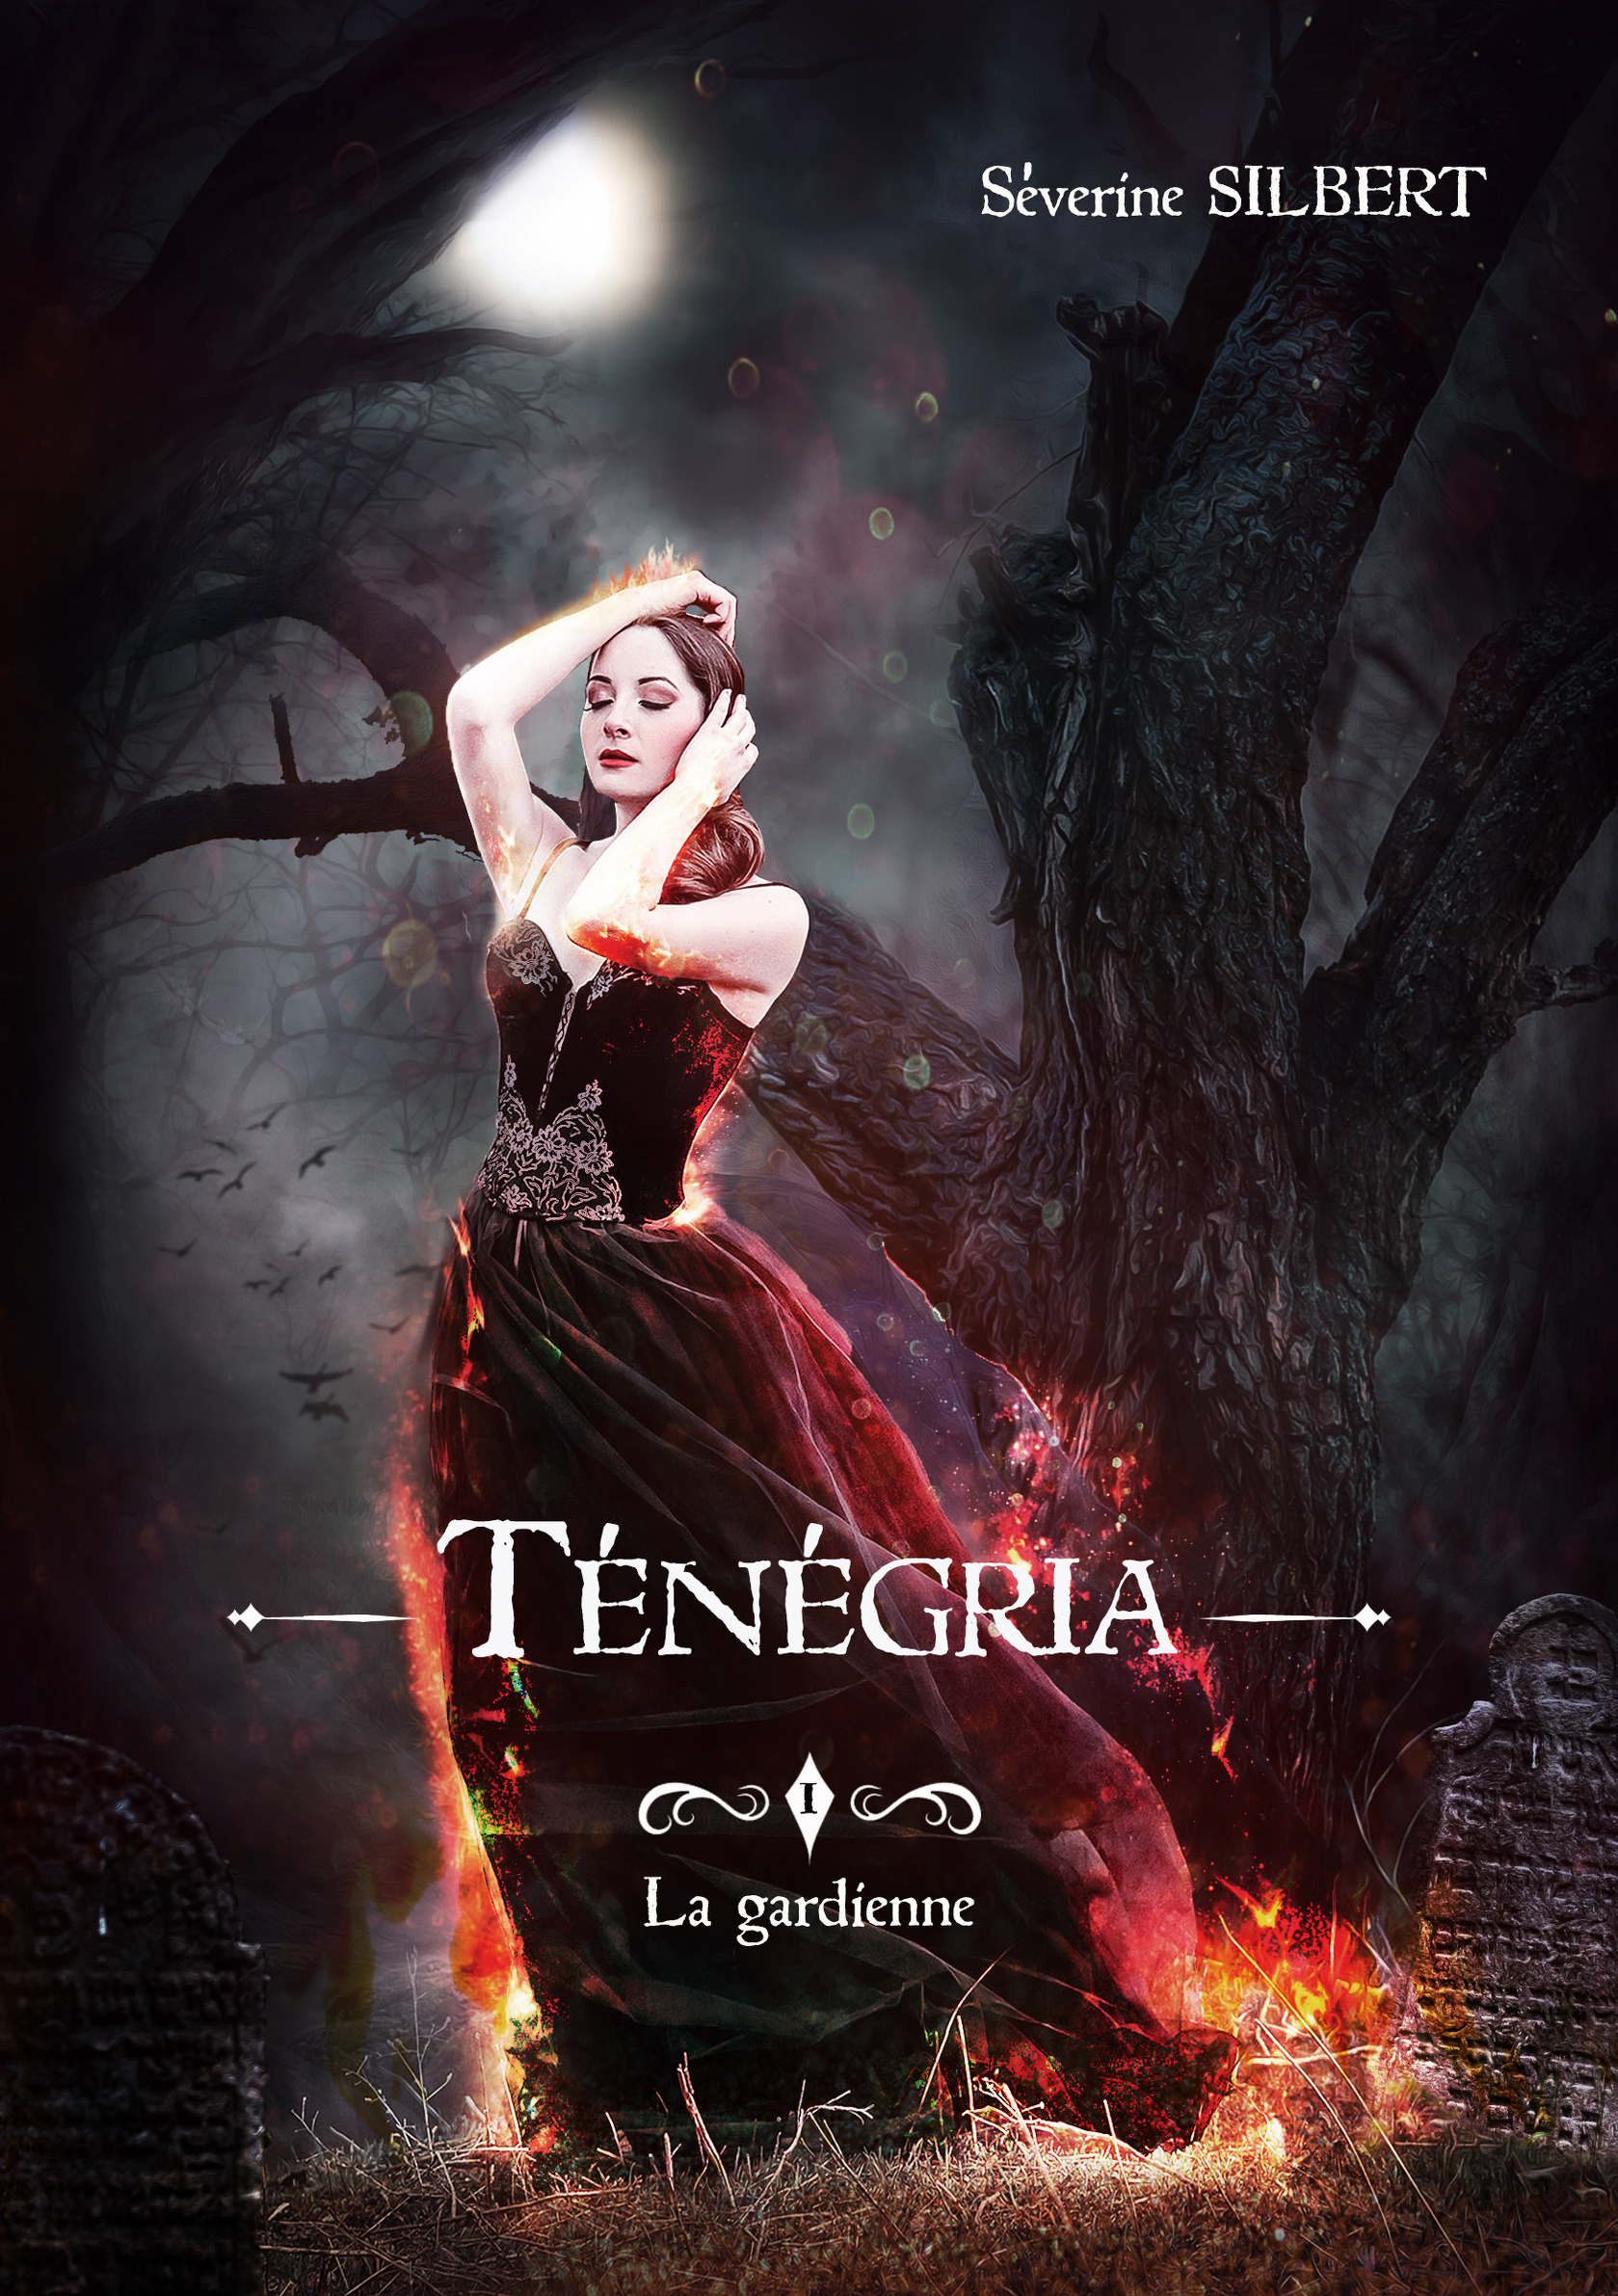 Tag sorcières sur Entre 2 livres Tenegria-tome-1-la-gardienne-962830